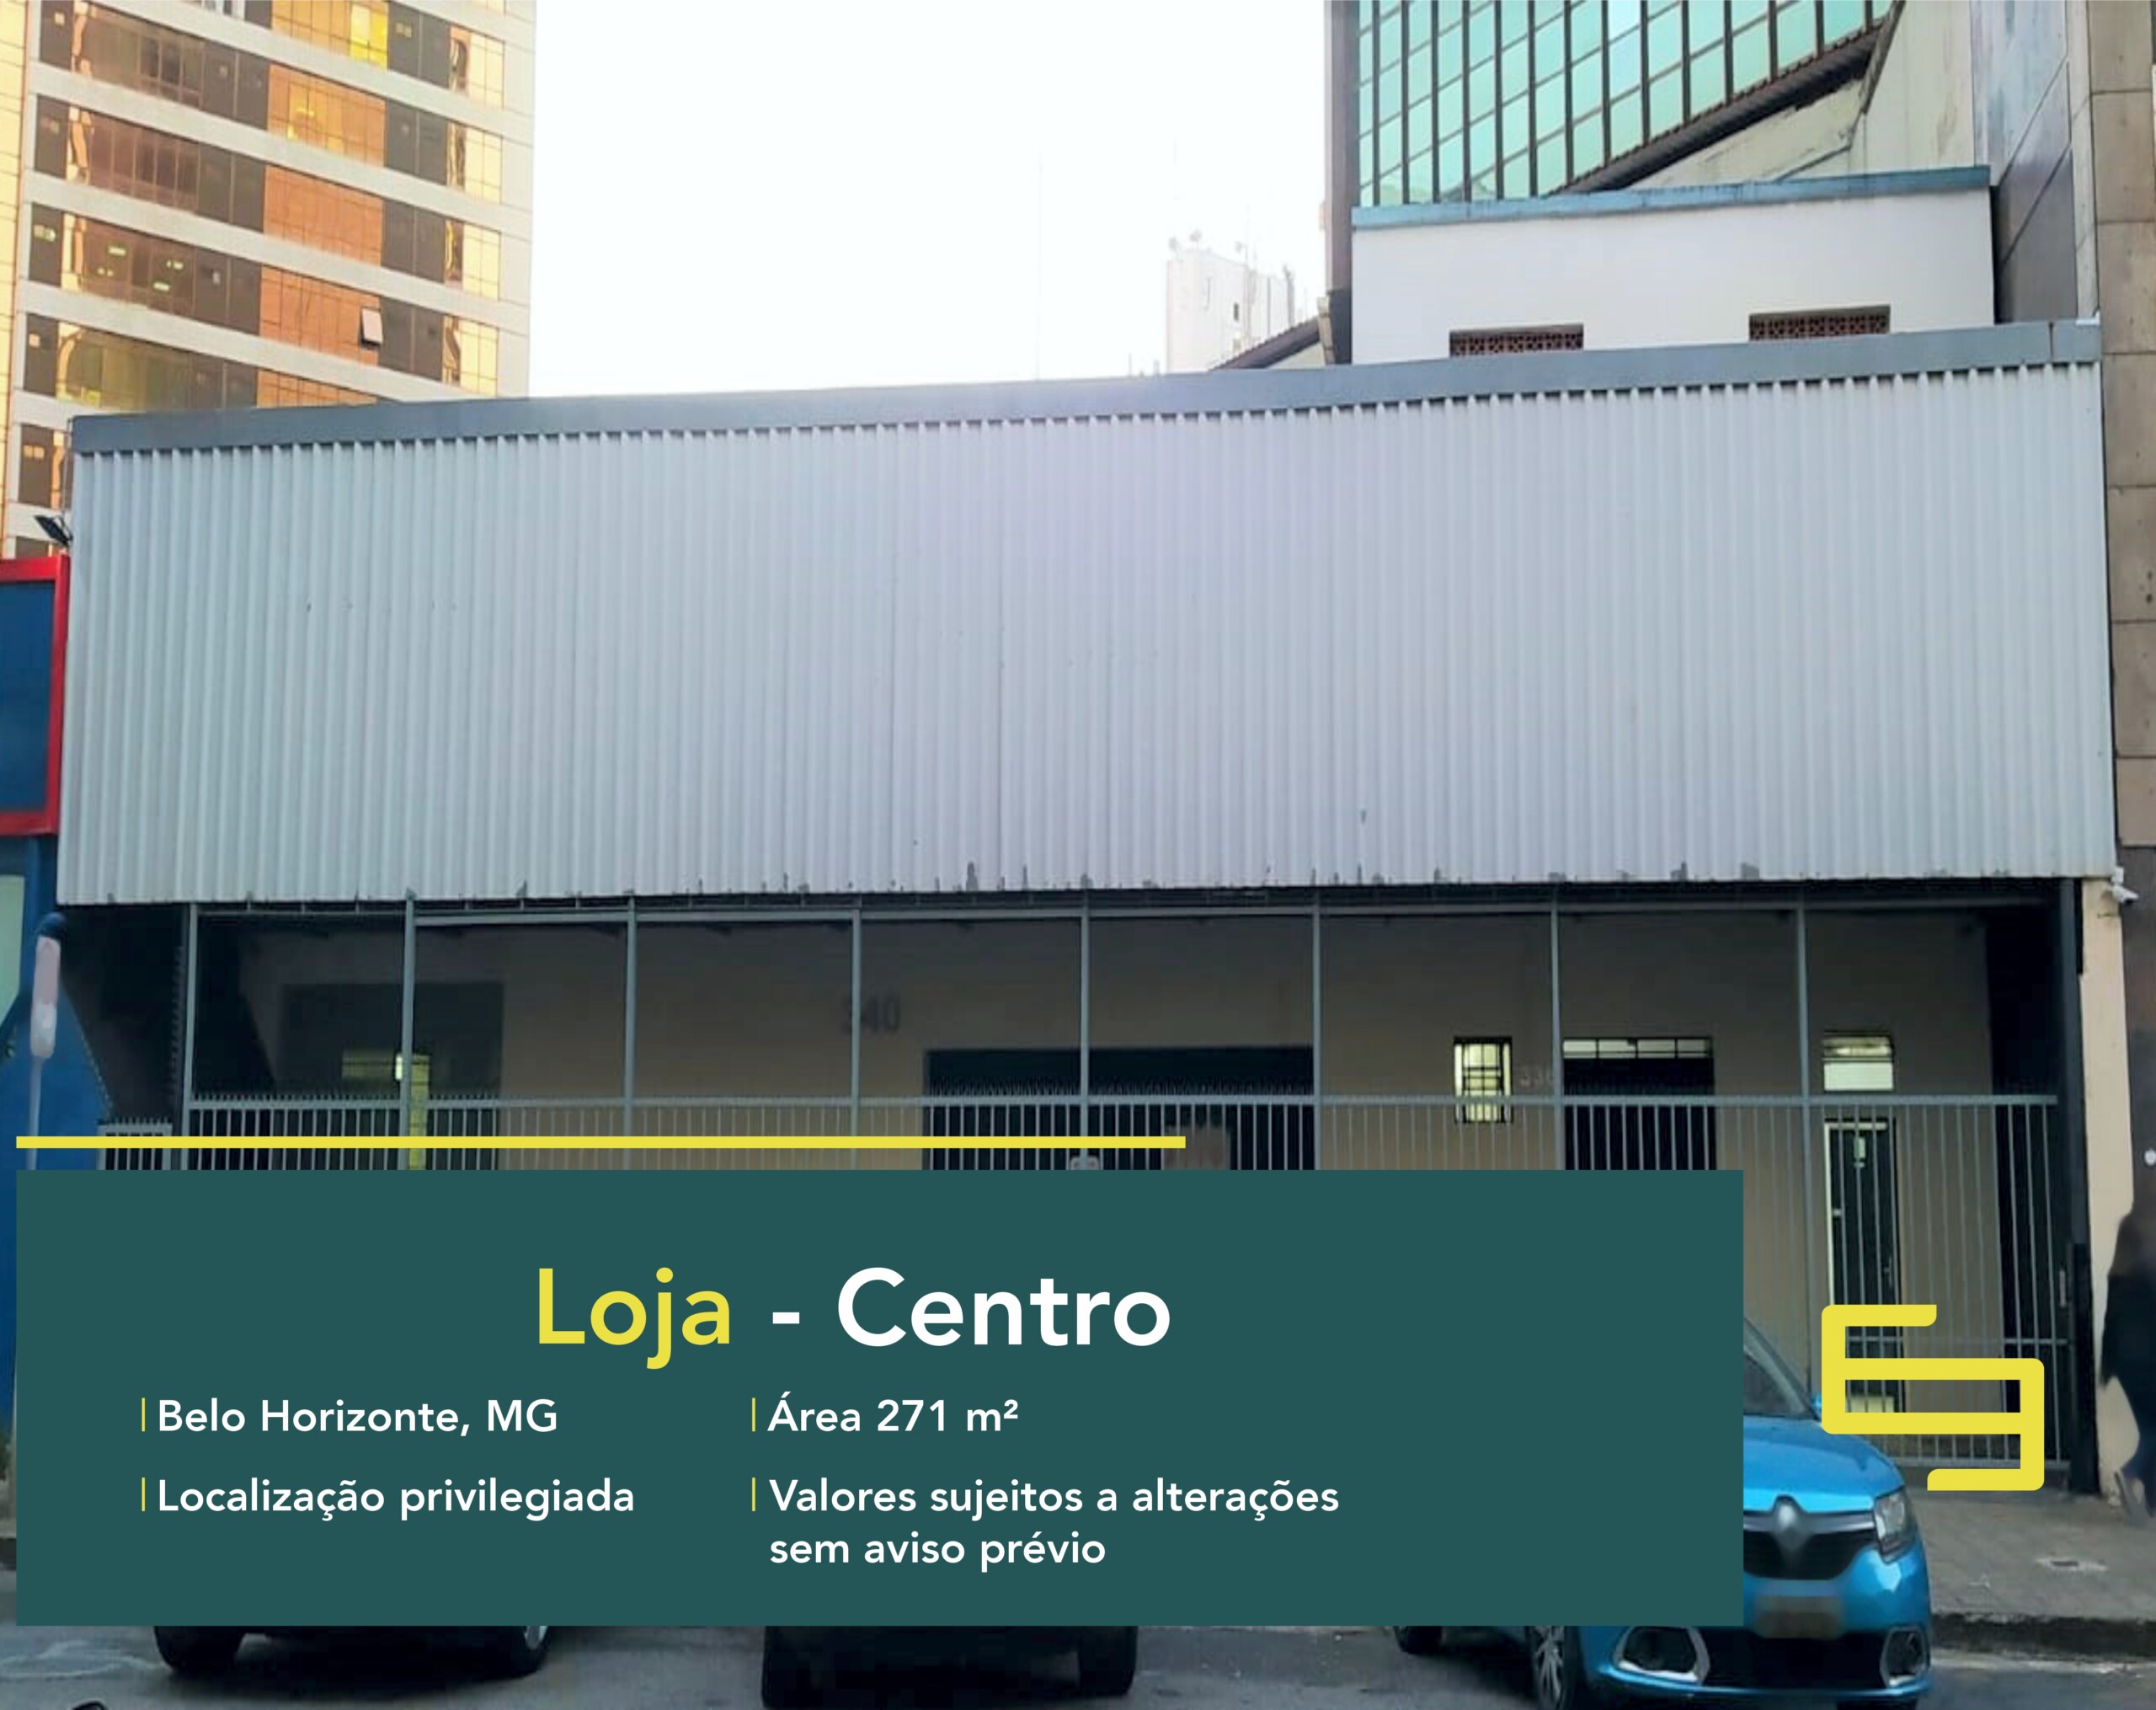 Locação de loja no Centro de Belo Horizonte. O estabelecimento comercial para alugar, conta sobretudo, com área de 271 m².